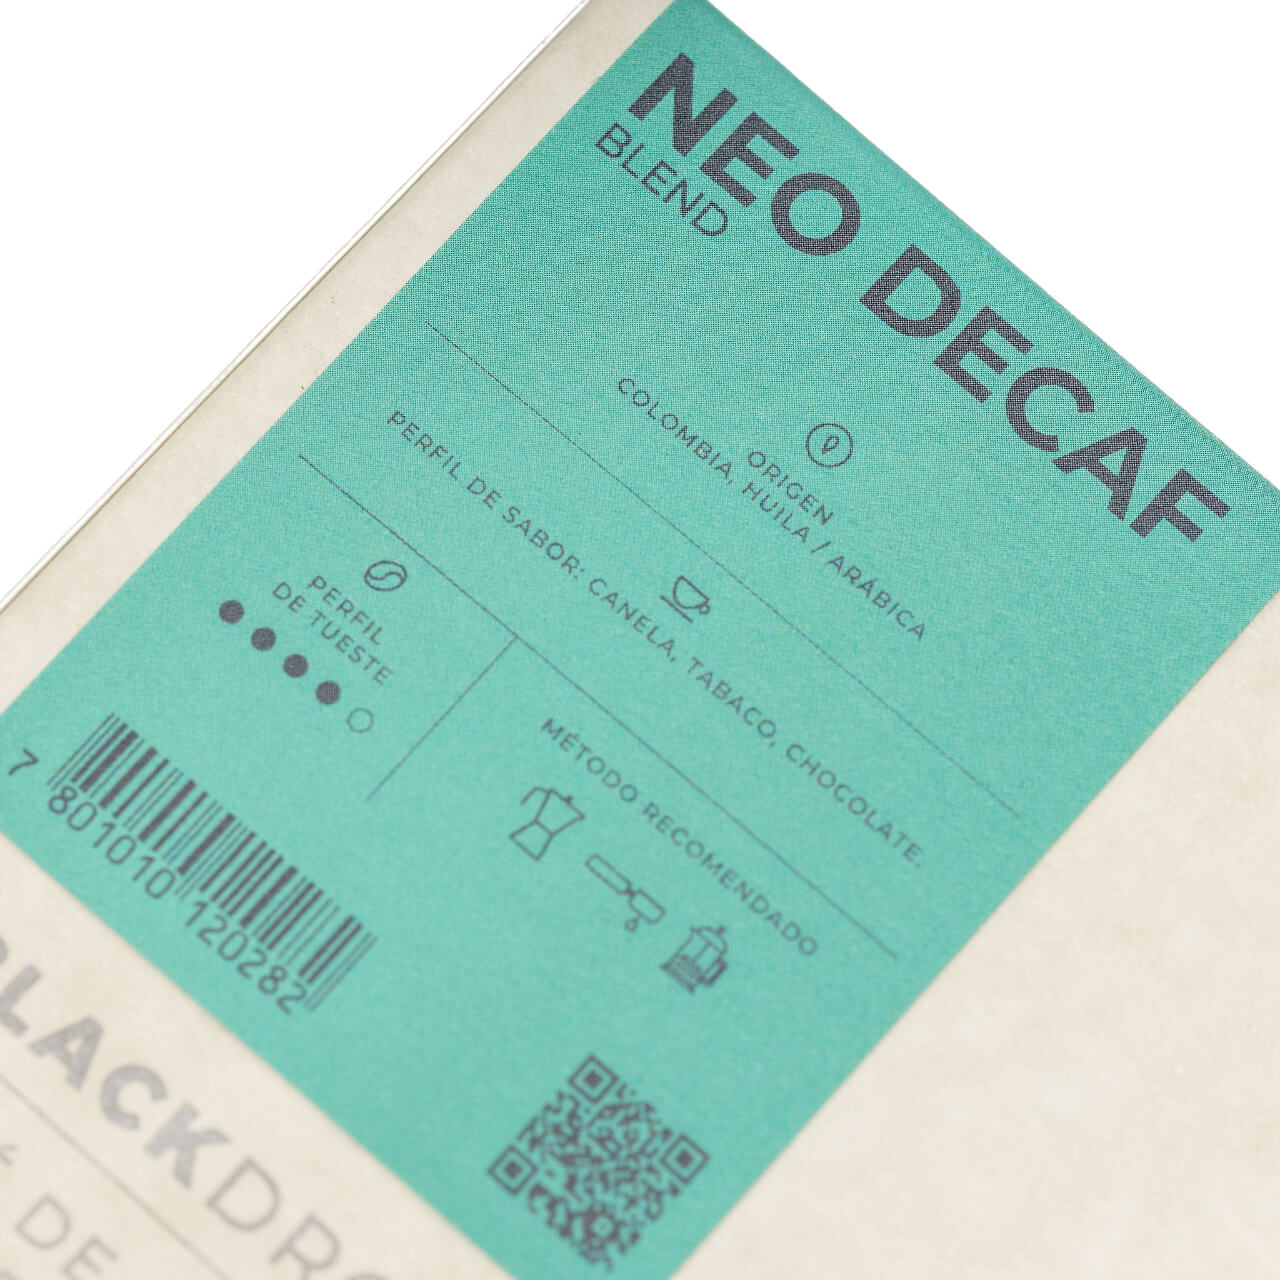 Café descafeinado Neodecaf